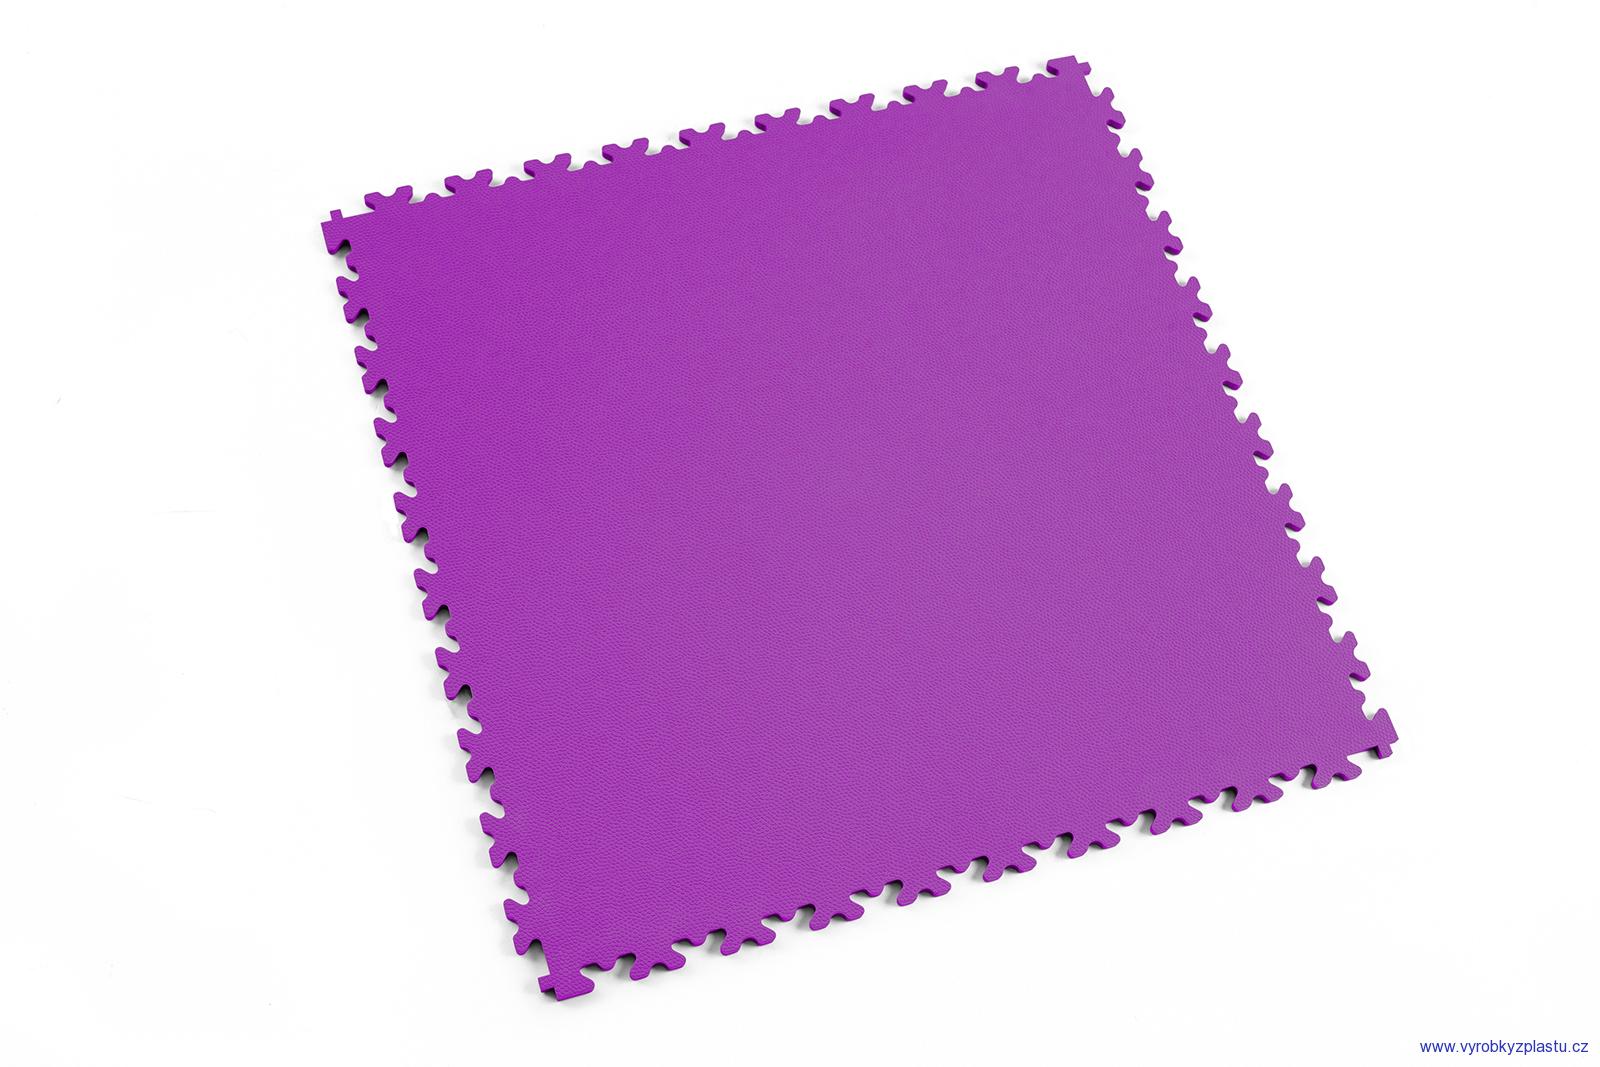 2020 (kůže) - dlaždice pro vysokou zátěž - Purple